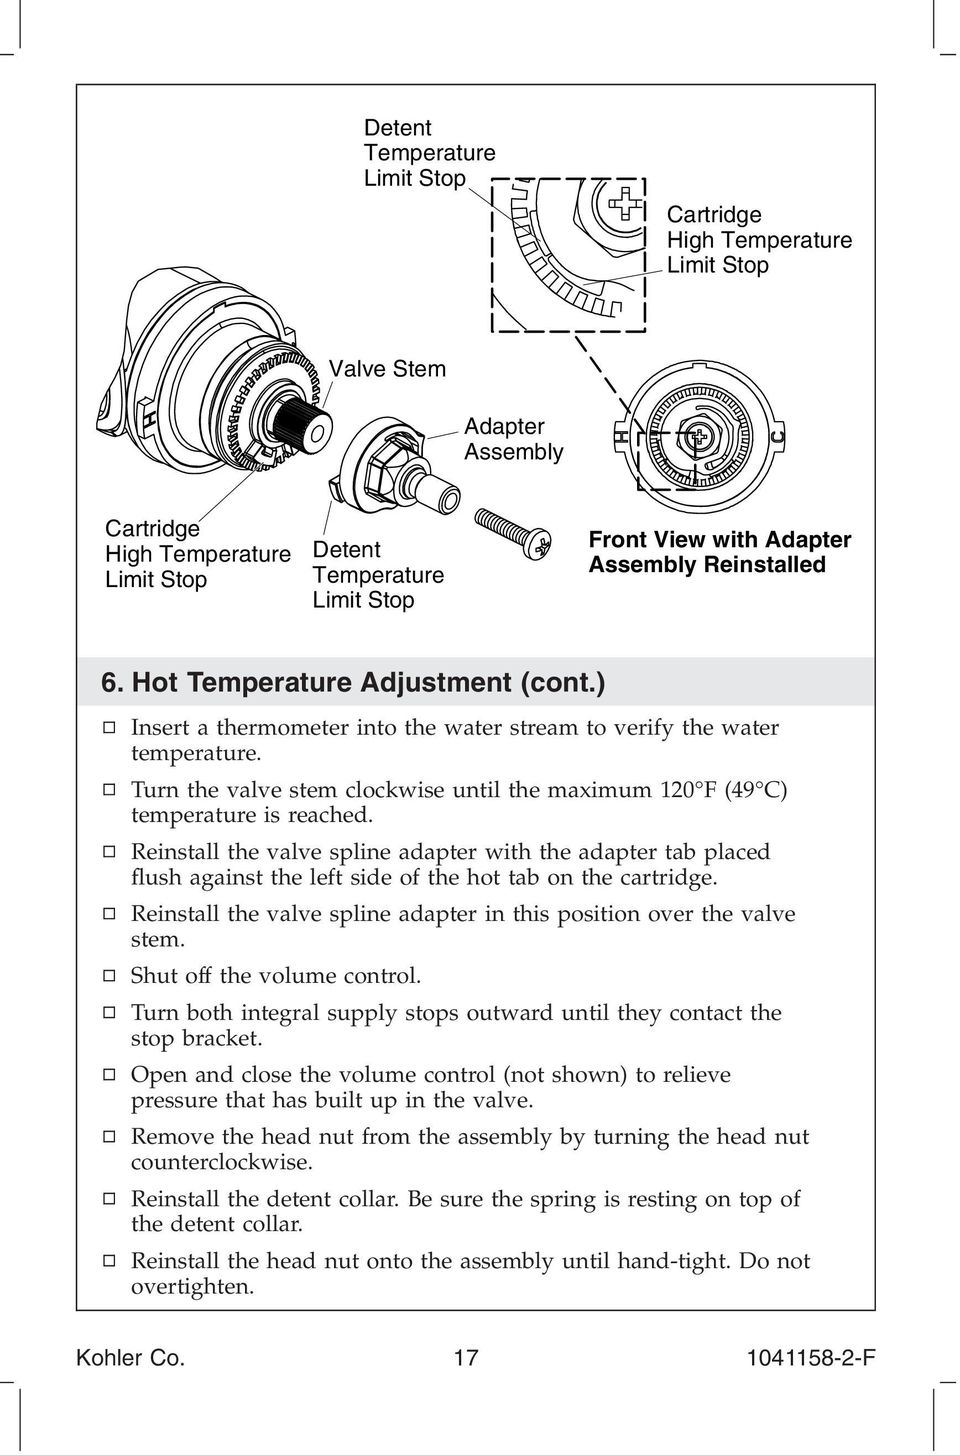 Turn the valve stem clockwise until the maximum 120 F (49 C) temperature is reached.